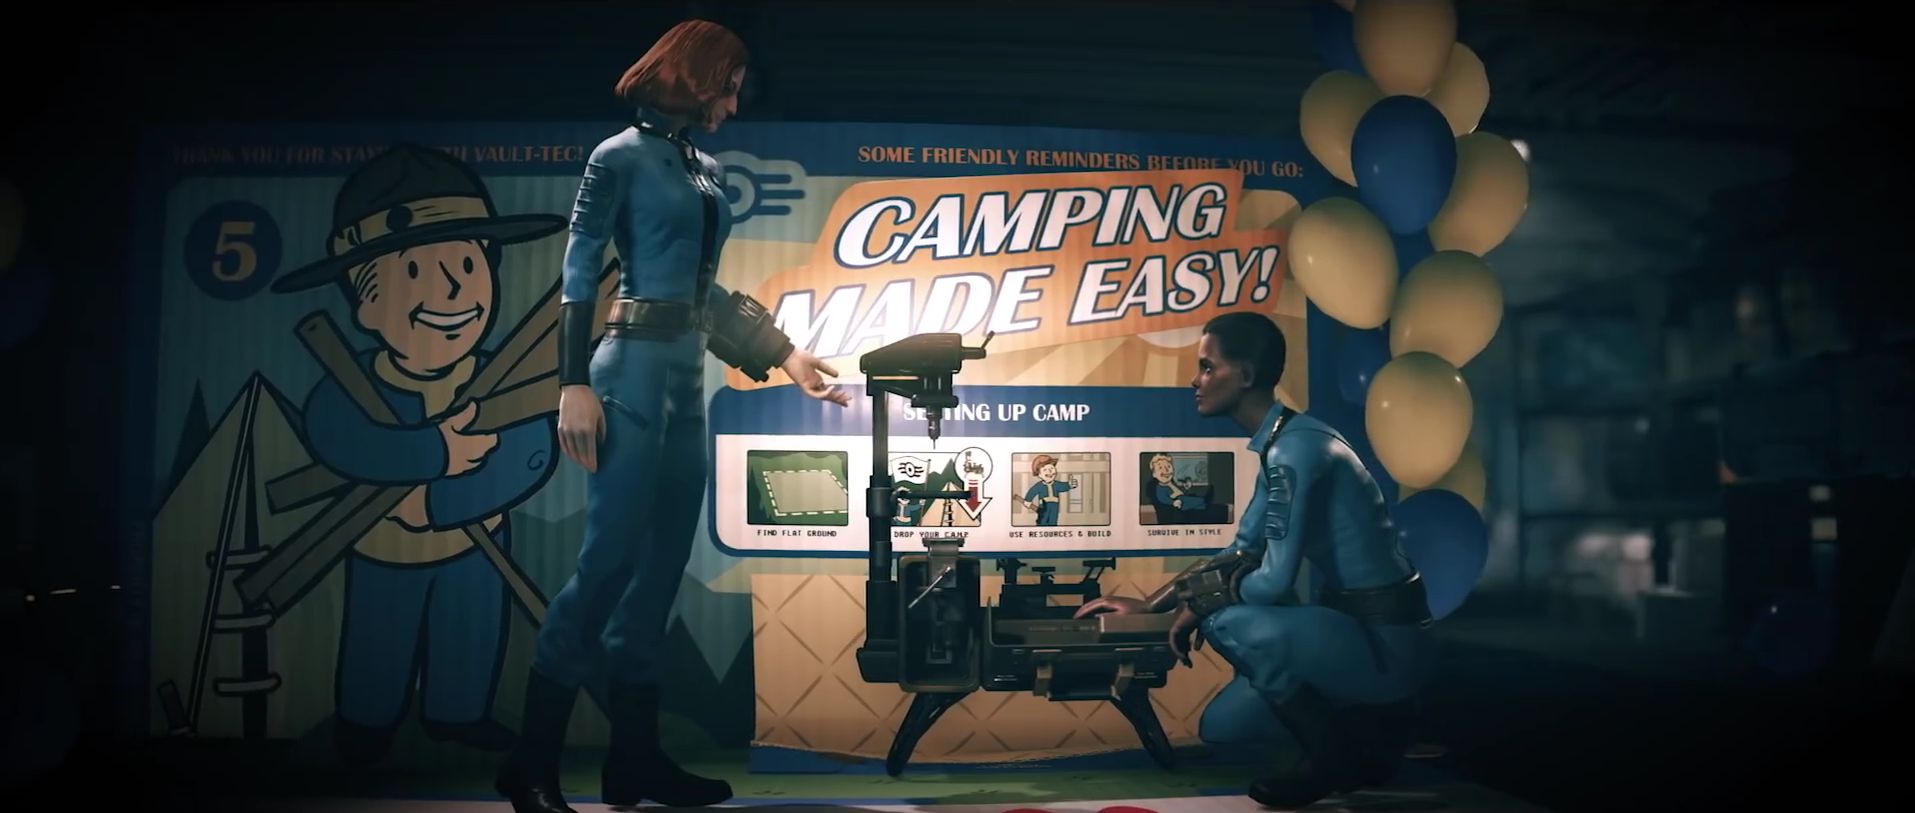 Spieler fordern größeres Lager in Fallout 76, es gibt einfach zu viel Zeug